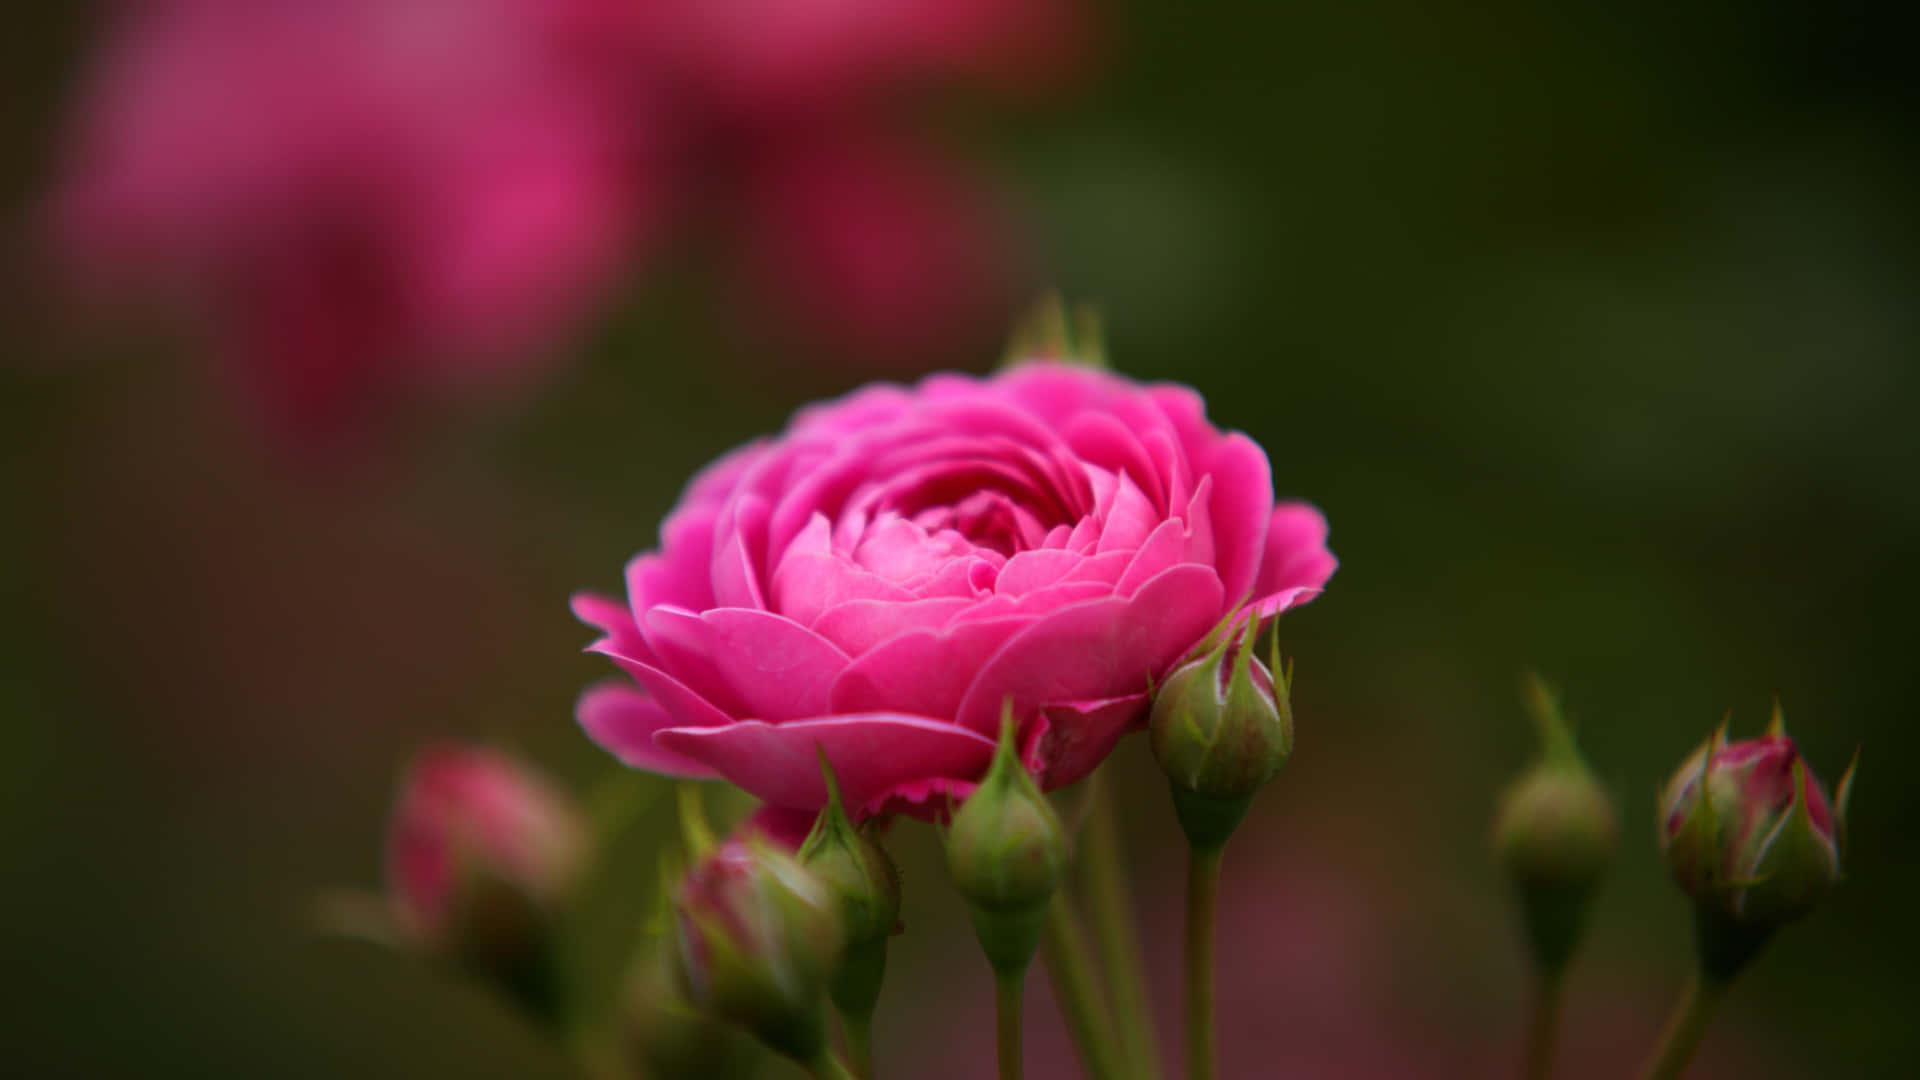 1440phintergrund Mit Voll Erblühter Rosa Rose